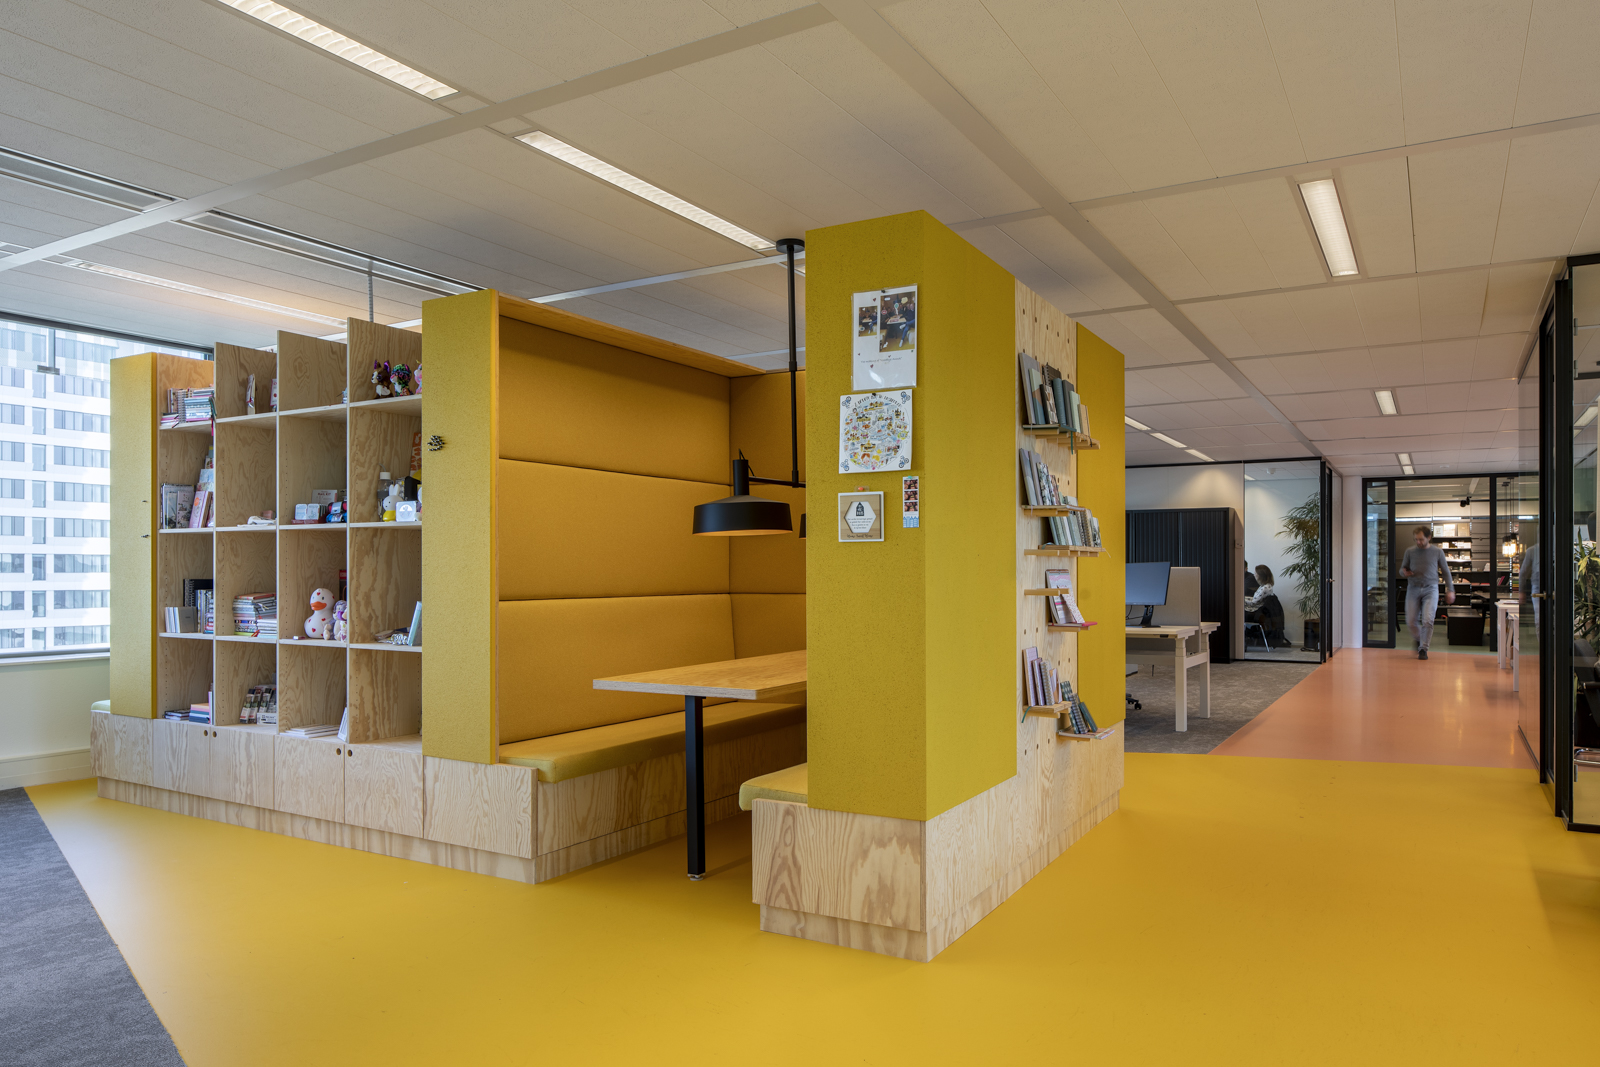 https://www.heyligersarchitects.nl/wp-content/uploads/2021/10/Bruna_06_interieur_heyligers_architect_kantoor_office_design_WoutervanderSar_19112100-35.jpg